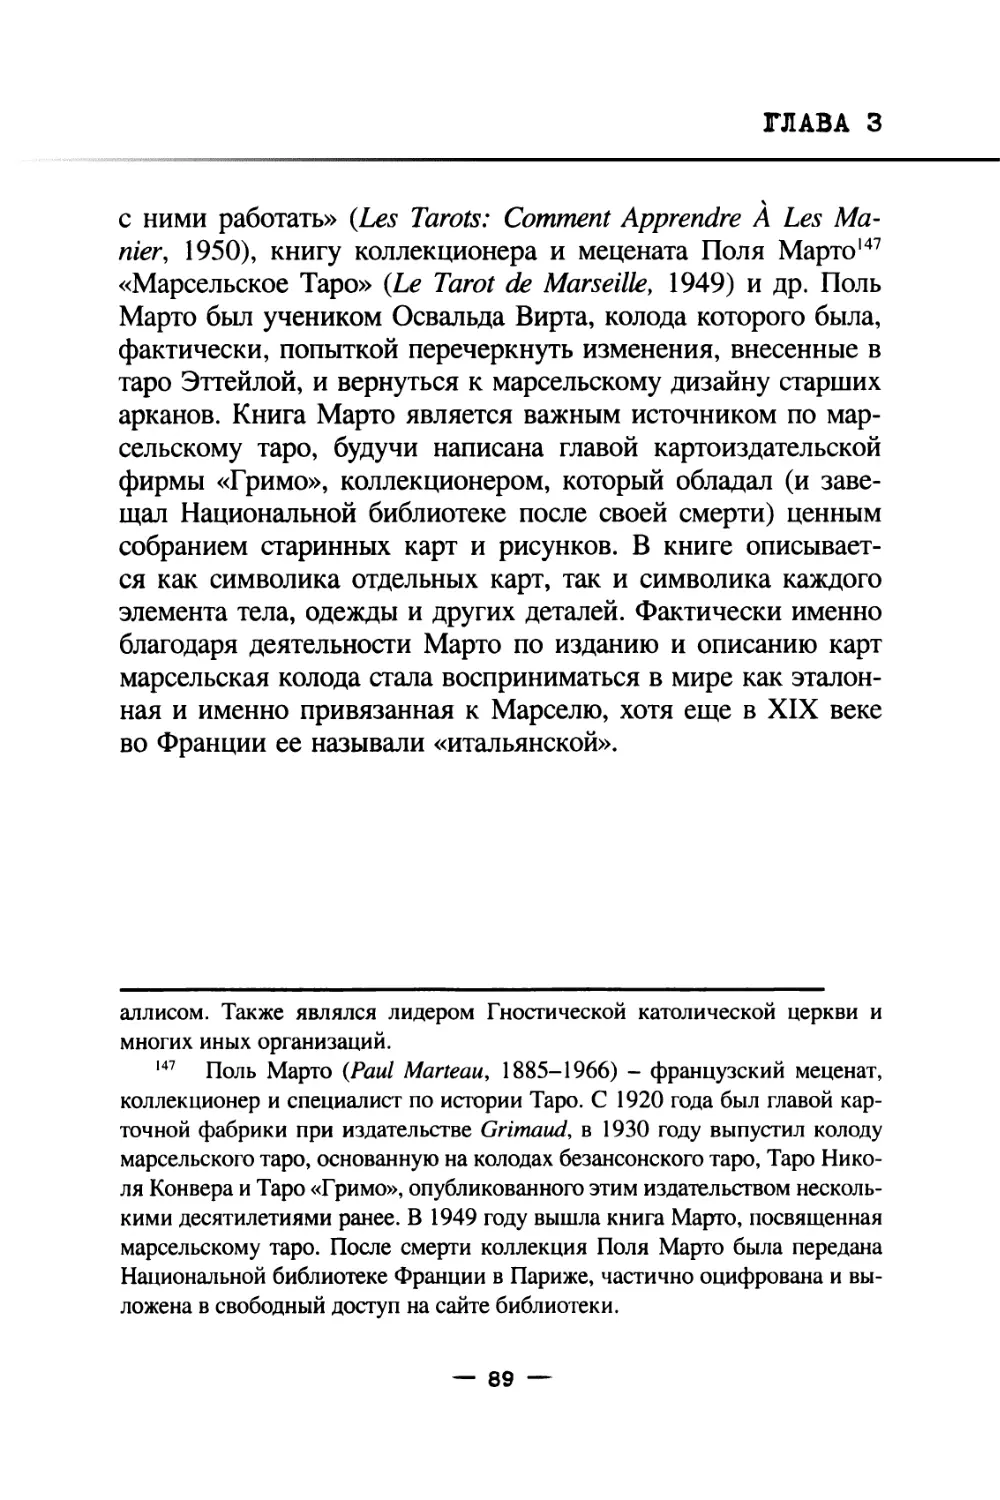 Глава 4. Изучение карт в Российской Империи на рубеже XIX-XX веков